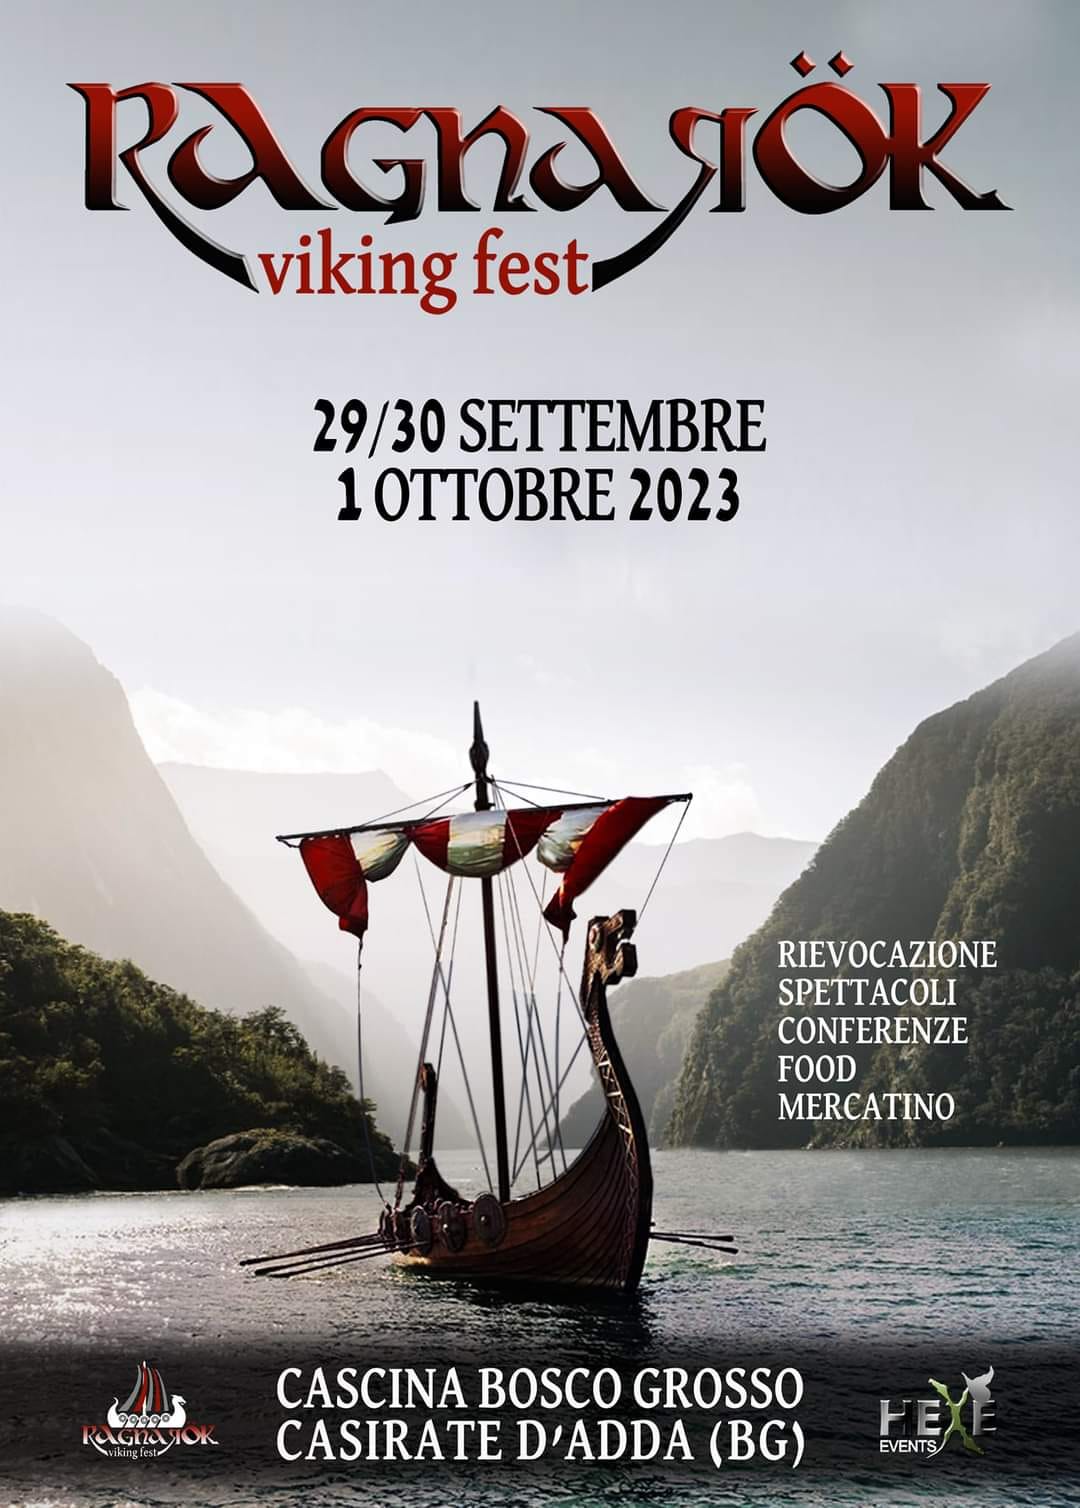 ragnarok viking festival poster